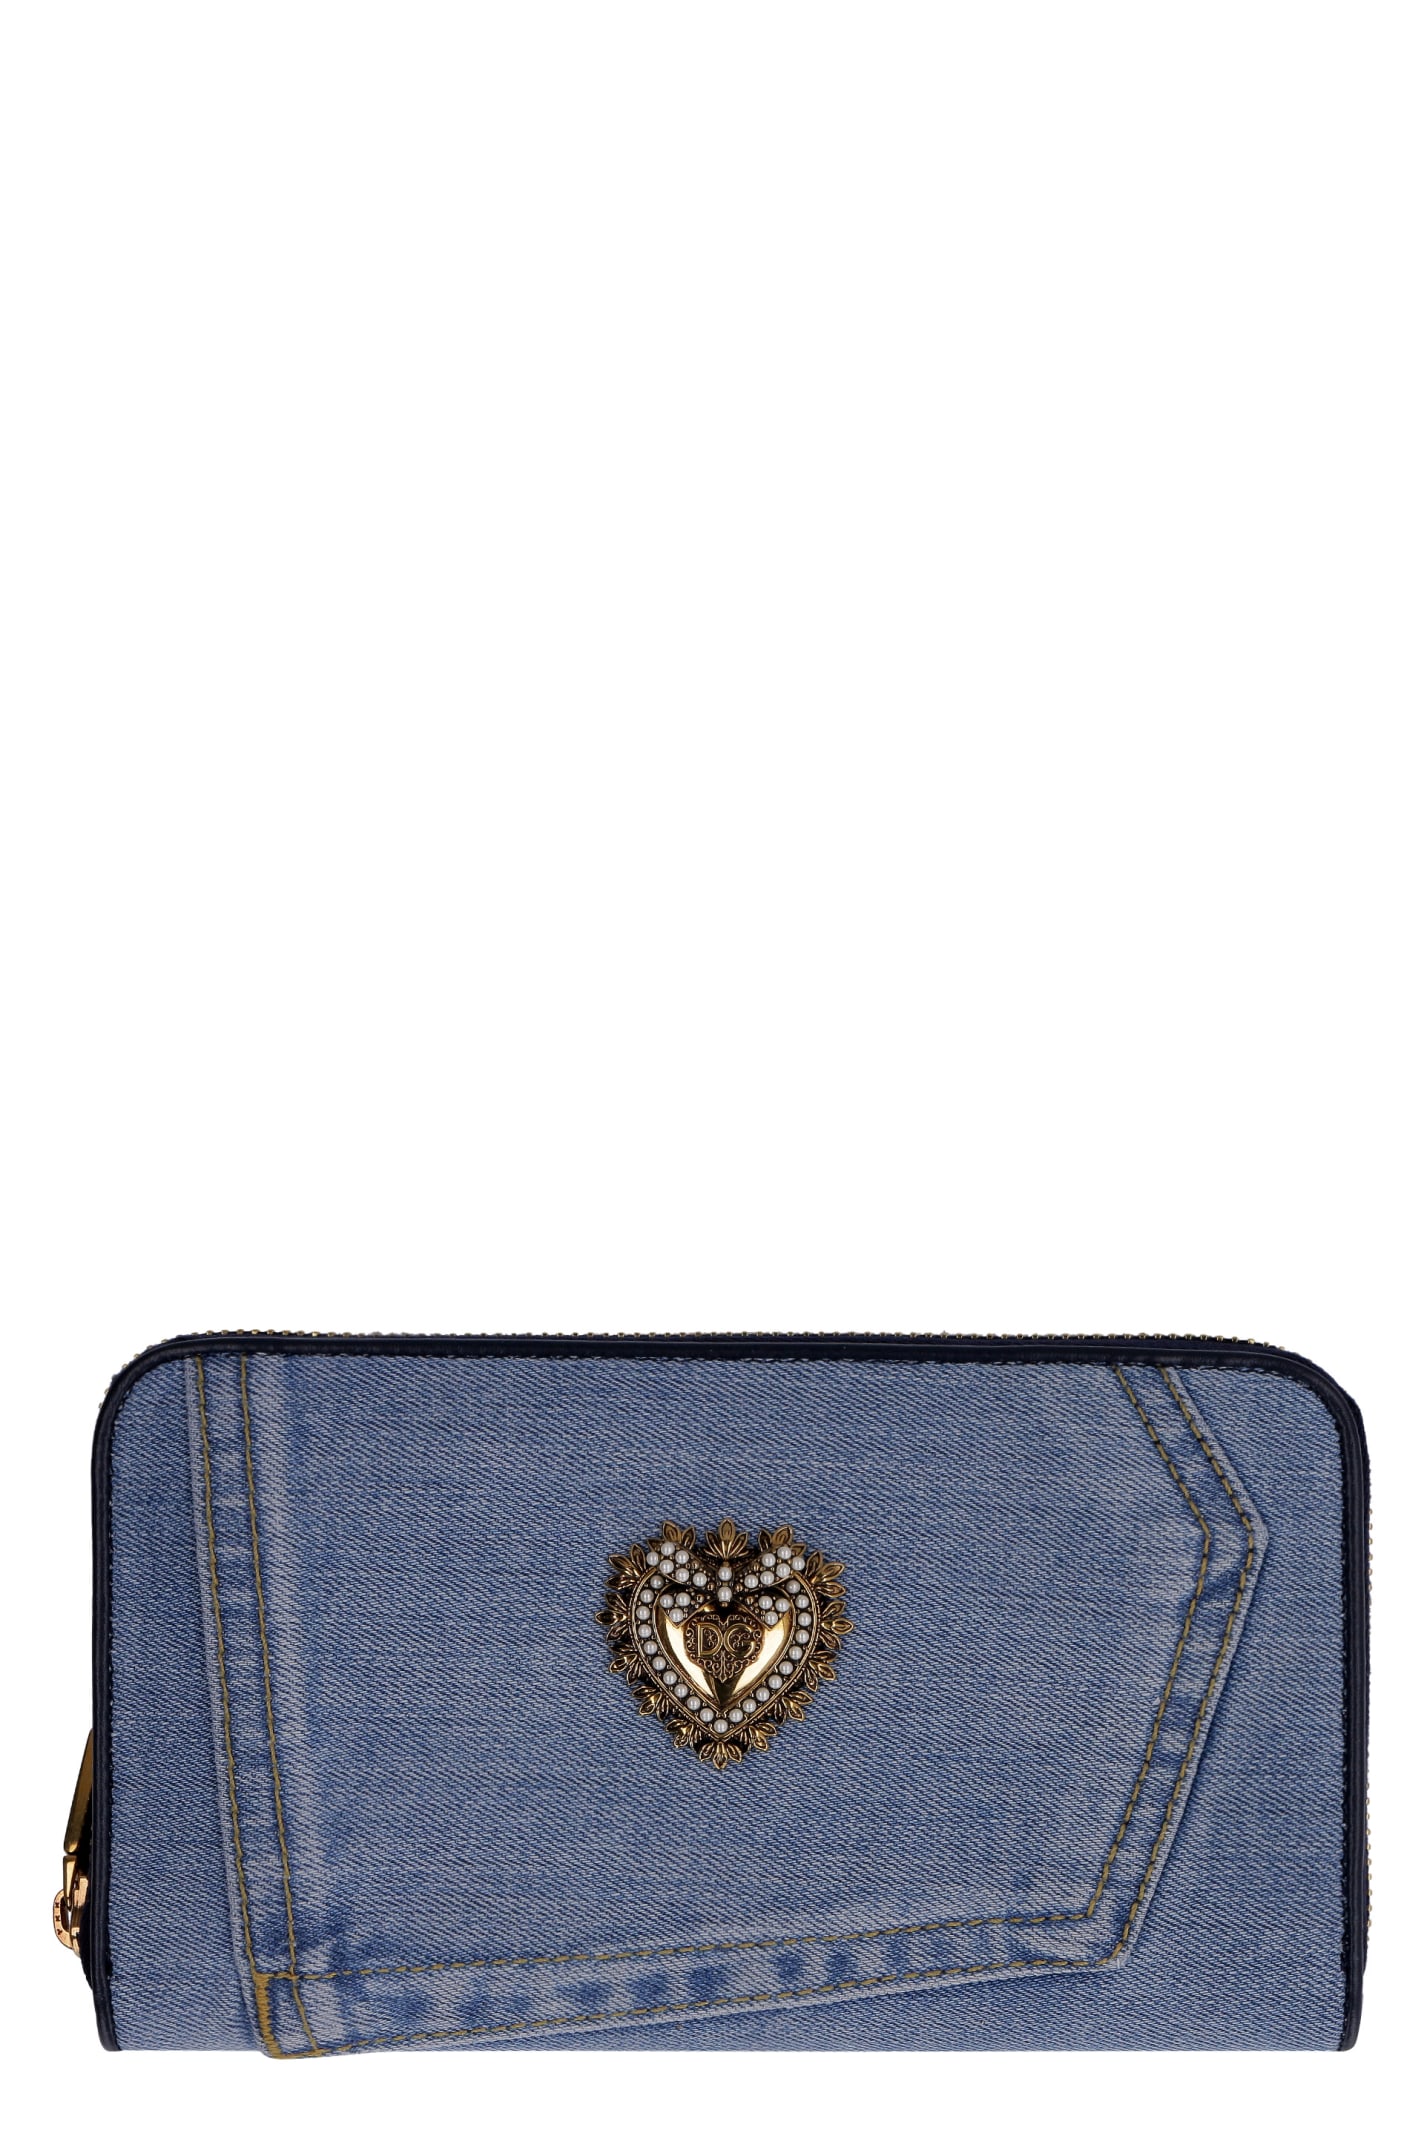 Dolce & Gabbana Devotion Zip-around Wallet